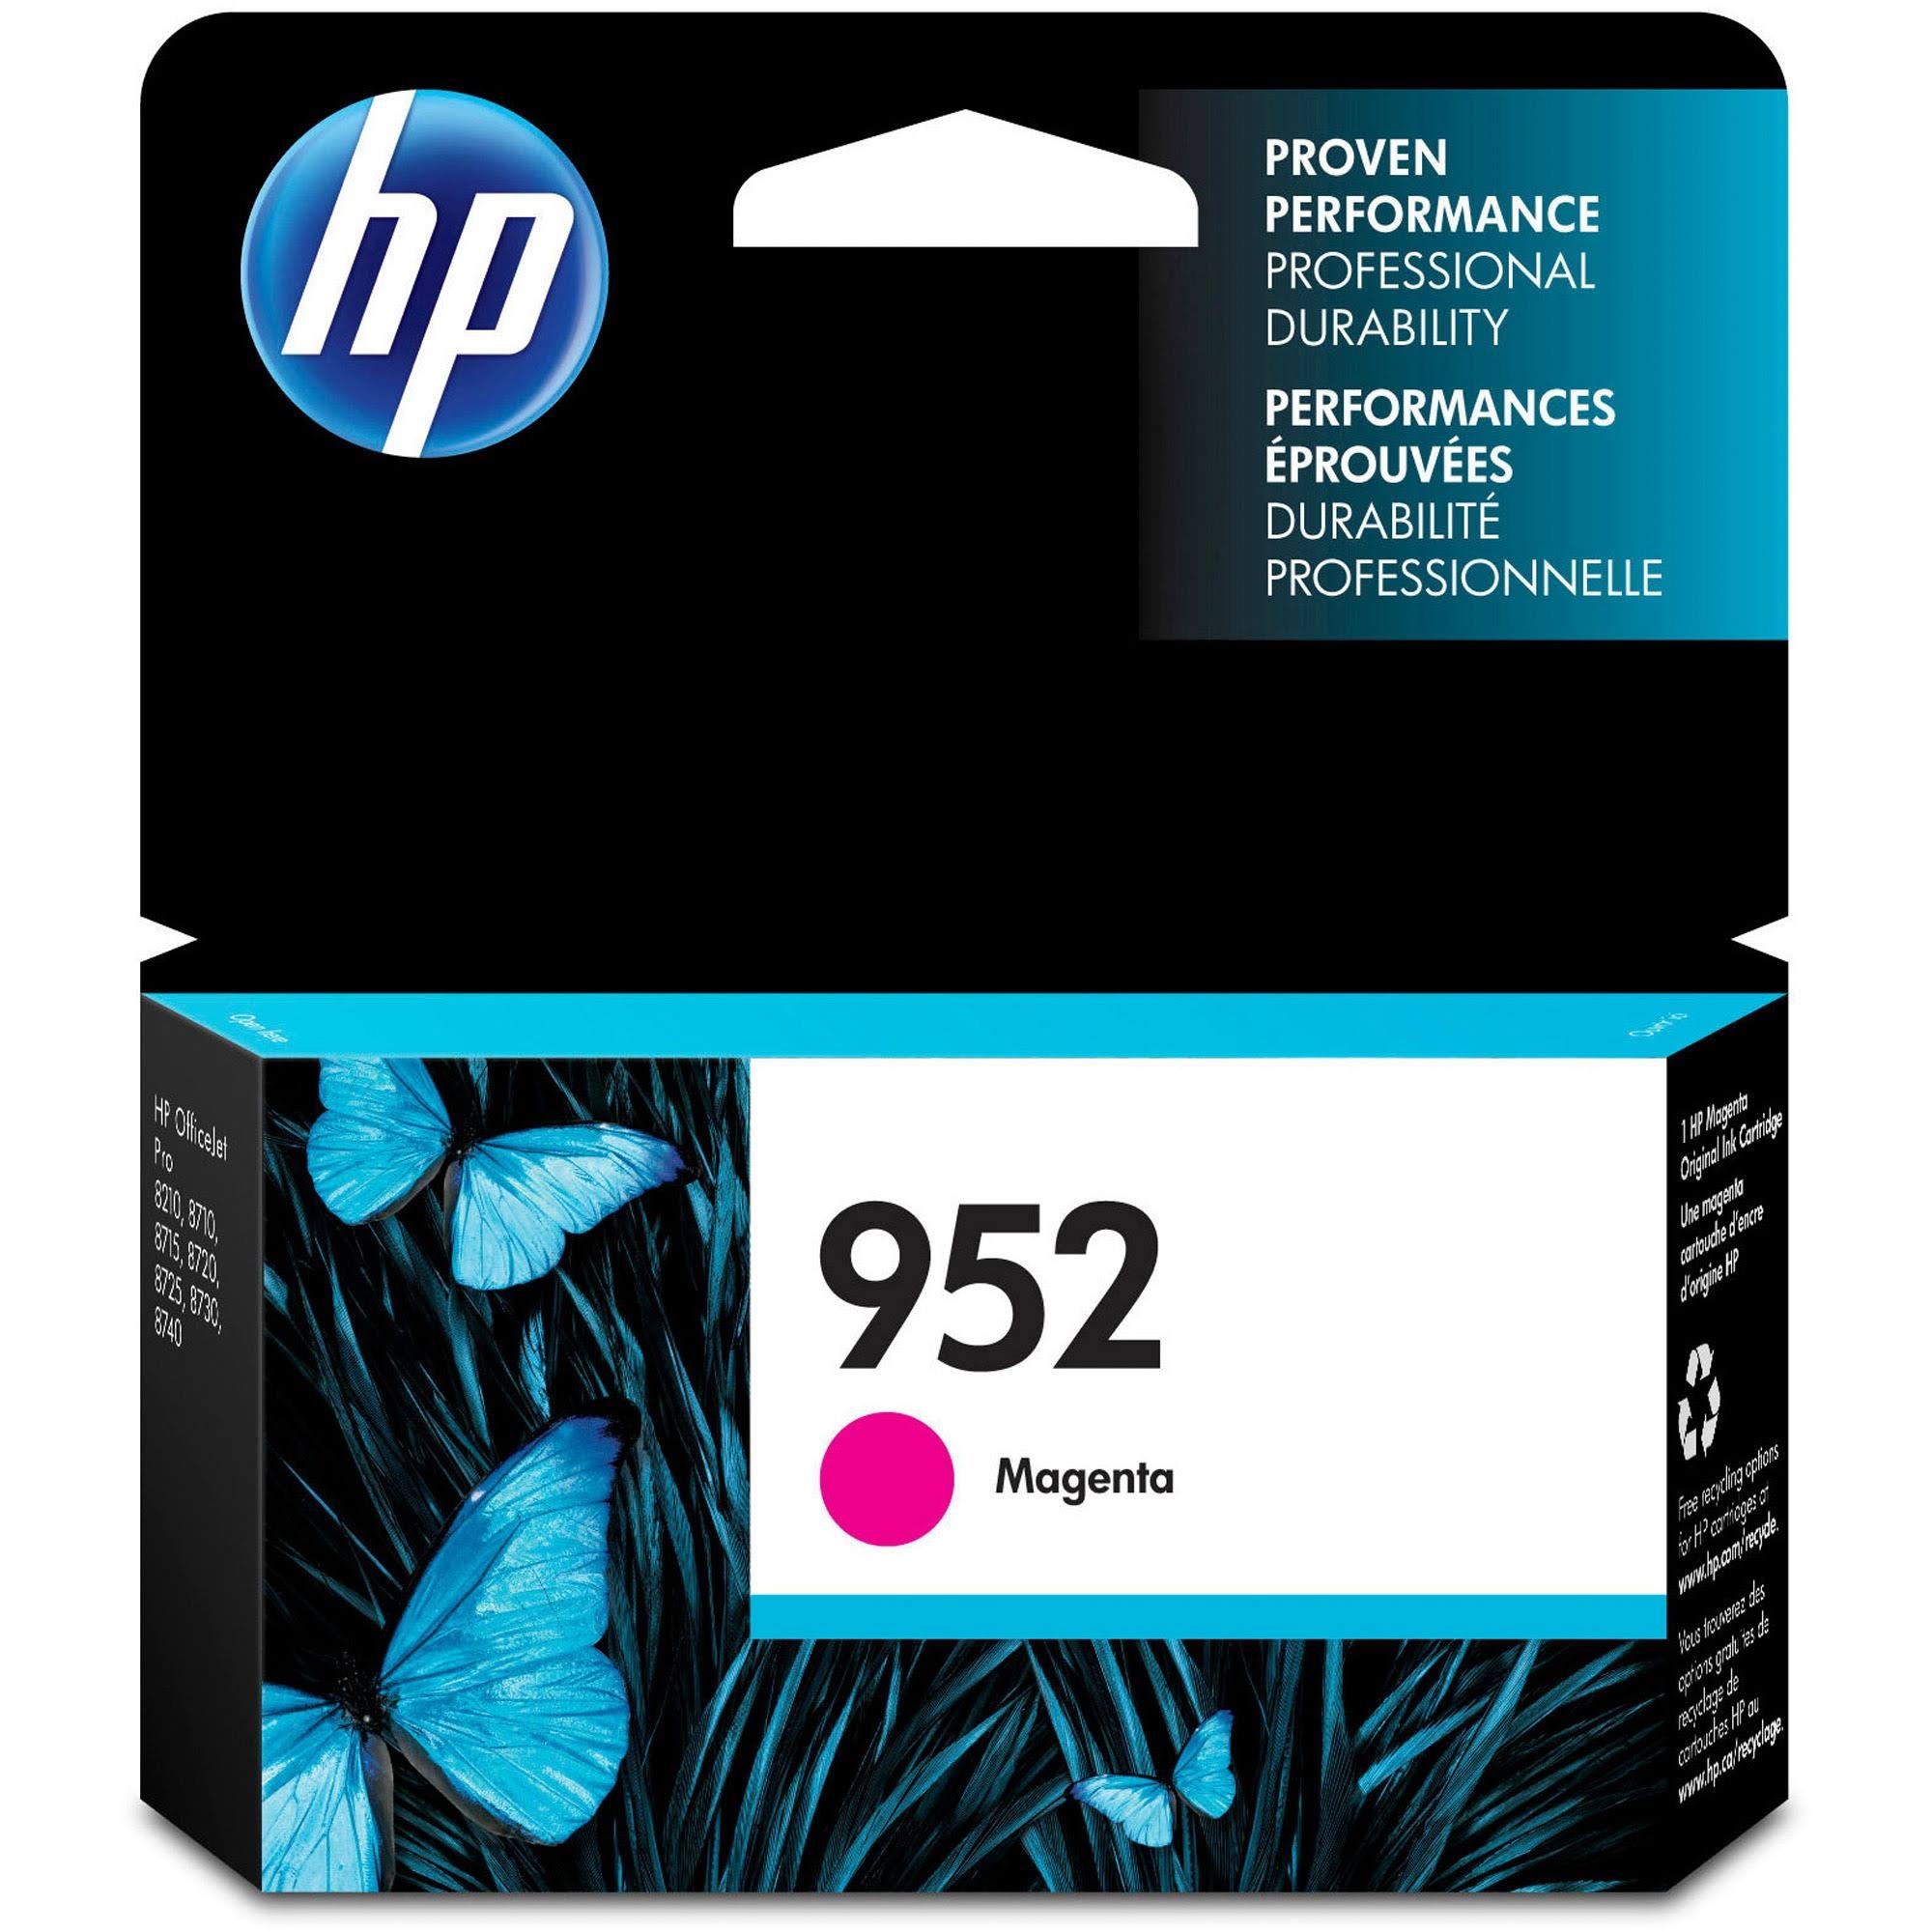 HP 952 - Magenta - Original - Ink Cartridge